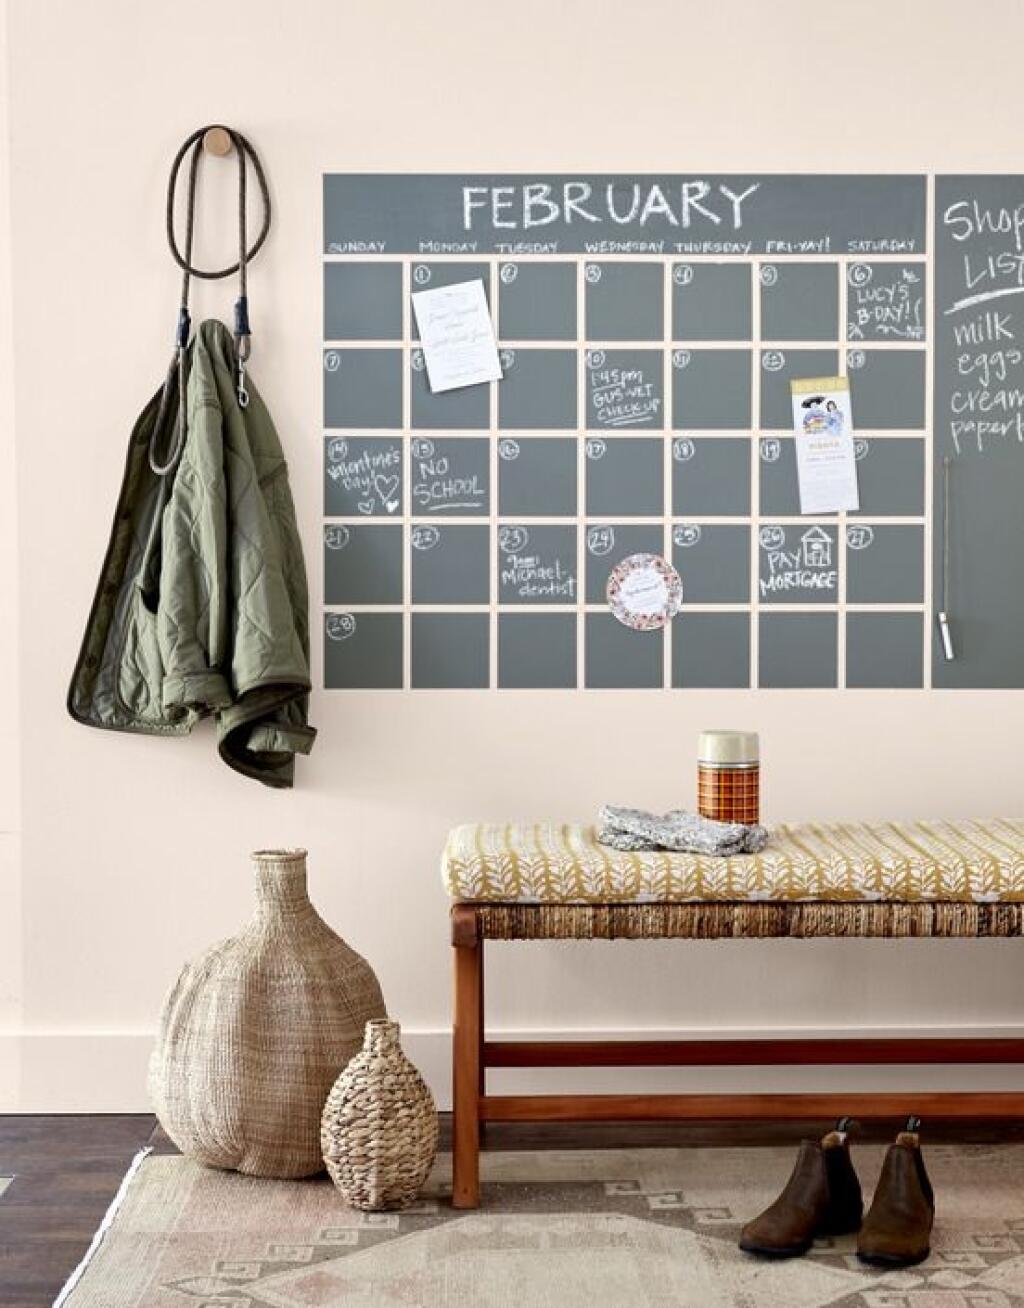 Sau khi sơn bạn trang trí bảng thành một tấm lịch tháng và chừa vị trí để ghi chú theo ngày.